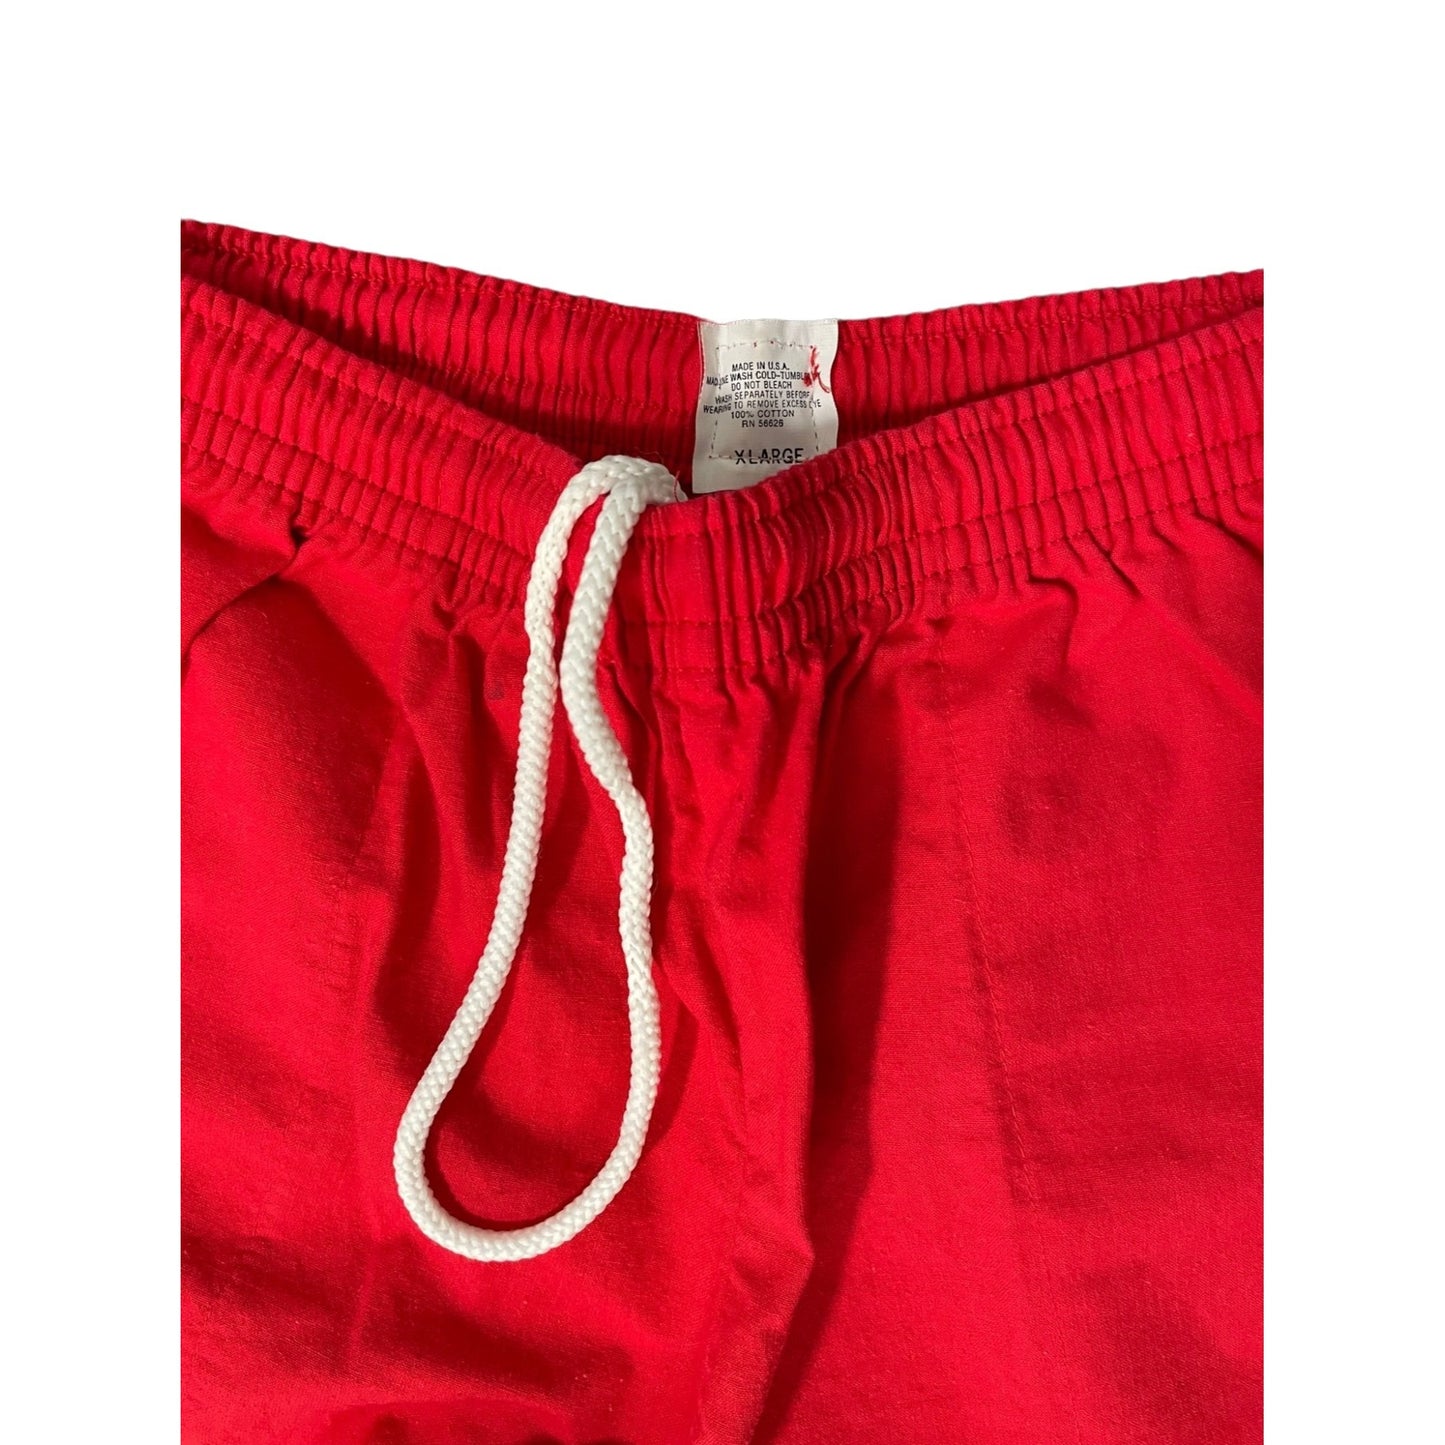 Vintage Red Drawstring Pants - XL